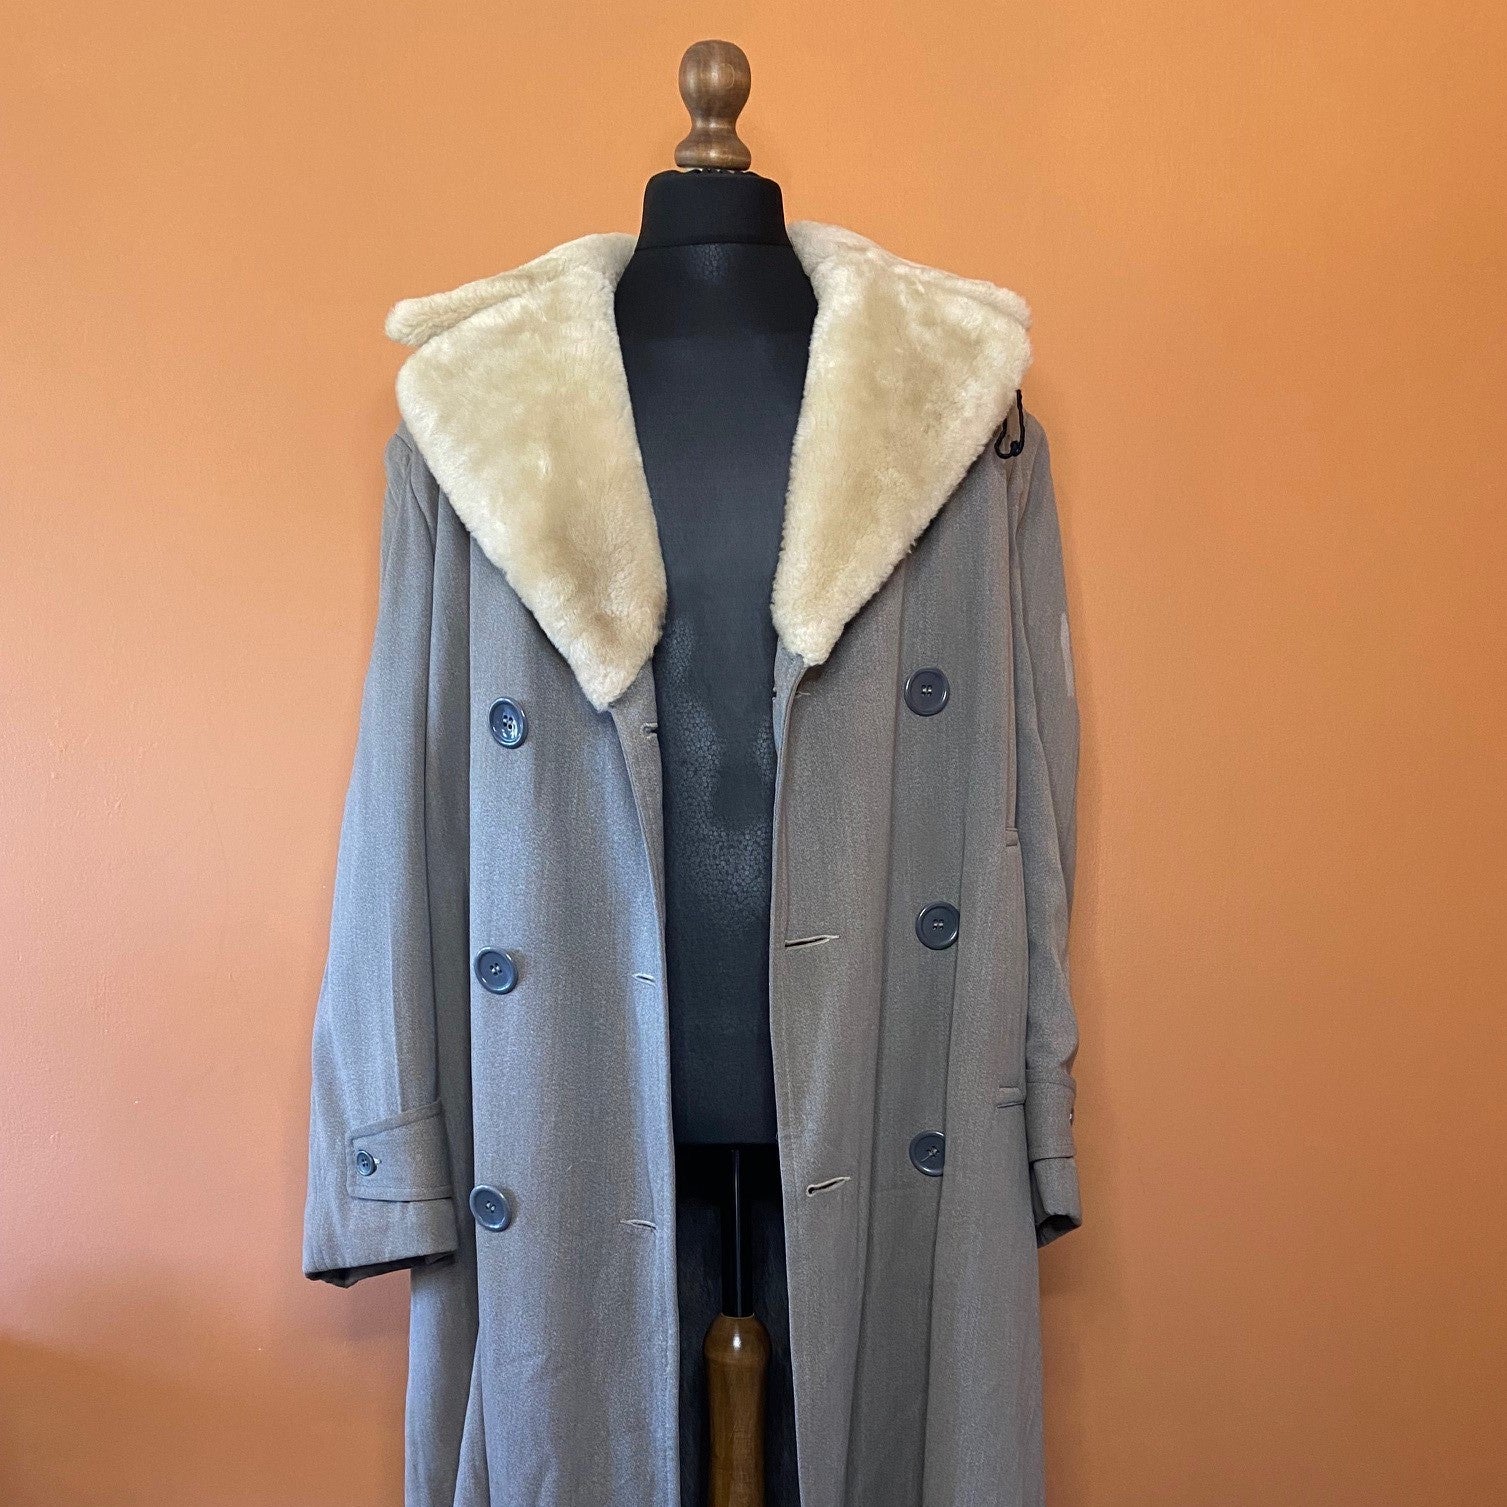 Vintage 1950s storm coat